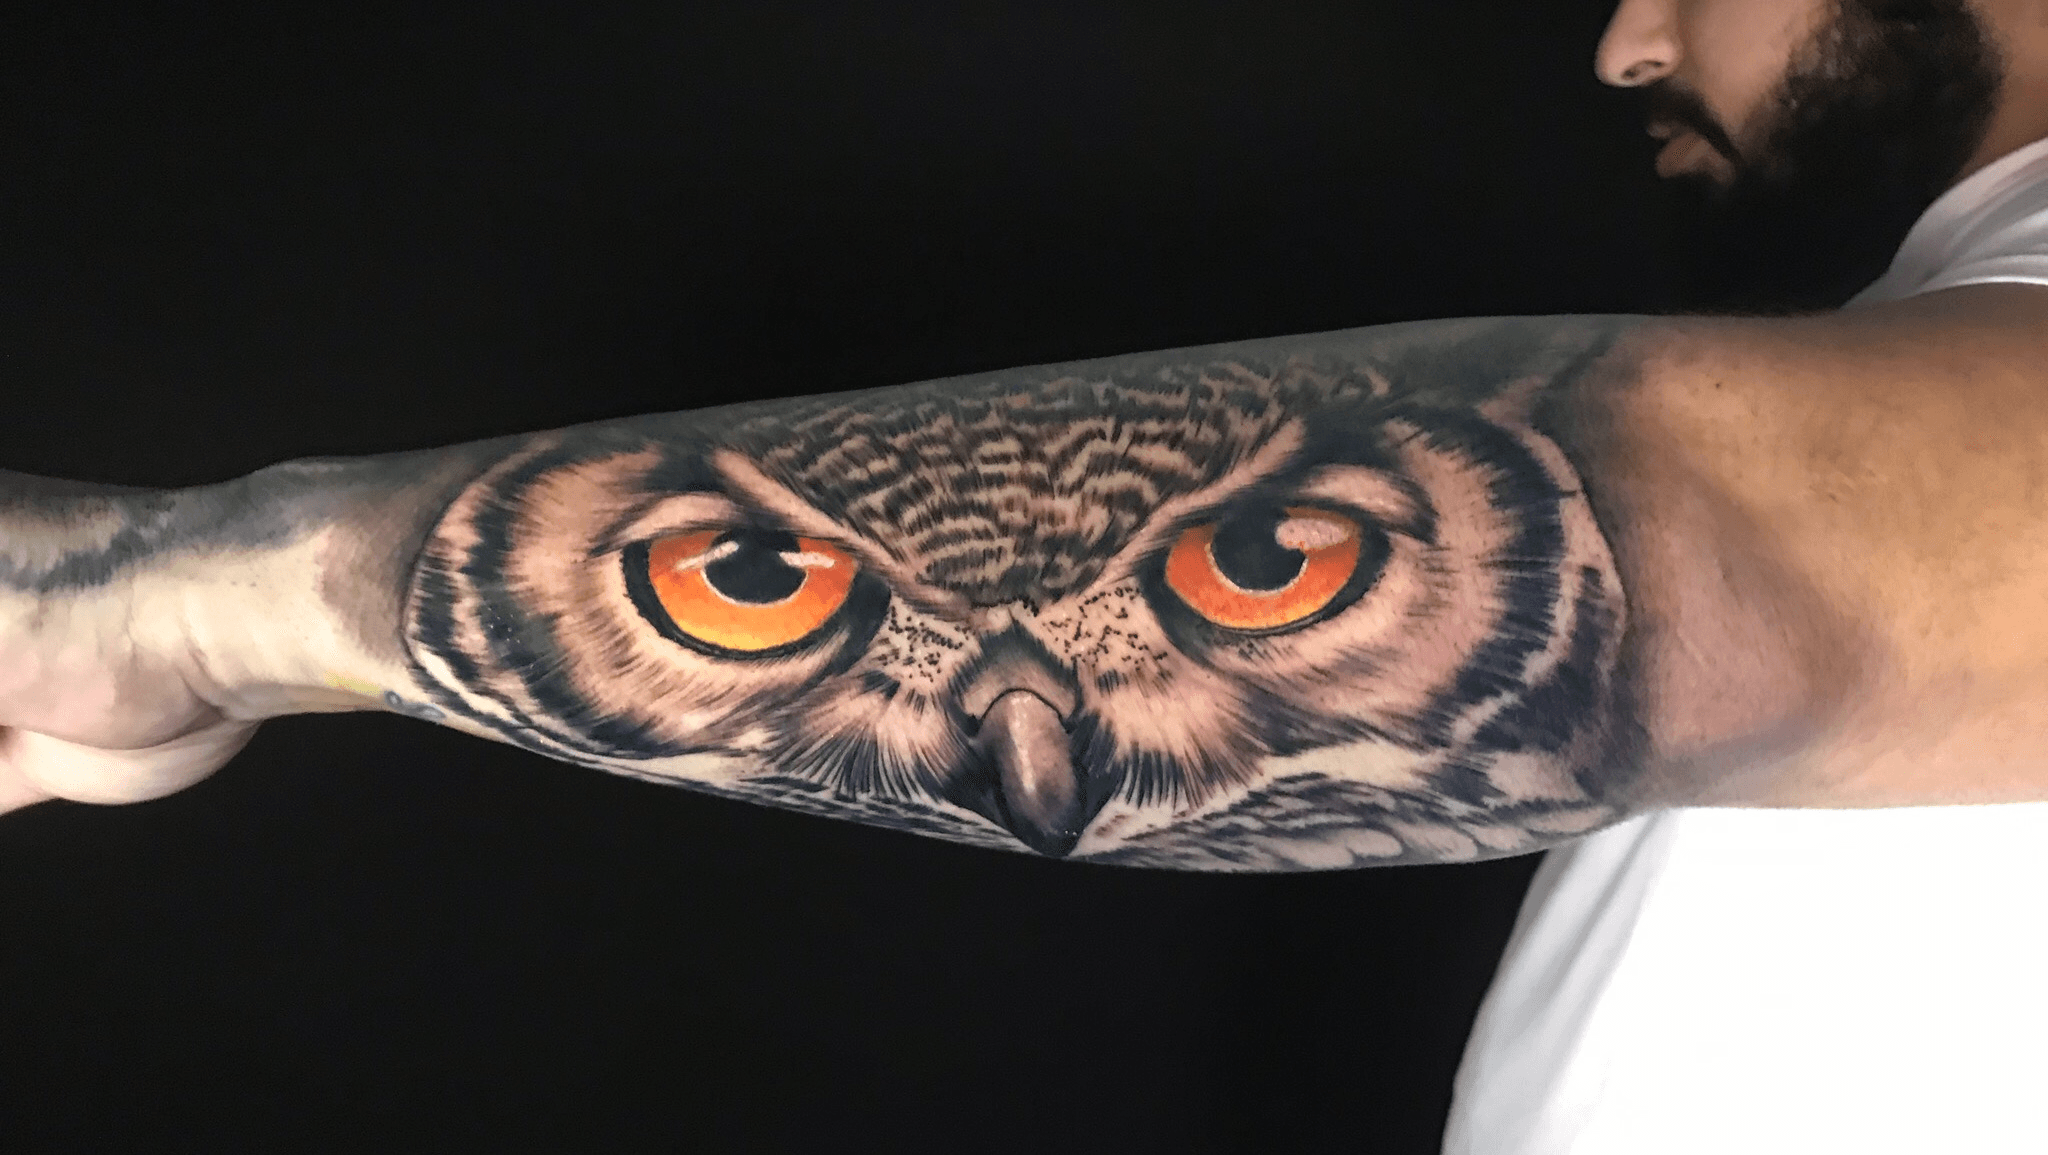 Αυτά ειναι  Owl eye tattoo Wildlife tattoo Forearm sleeve tattoos